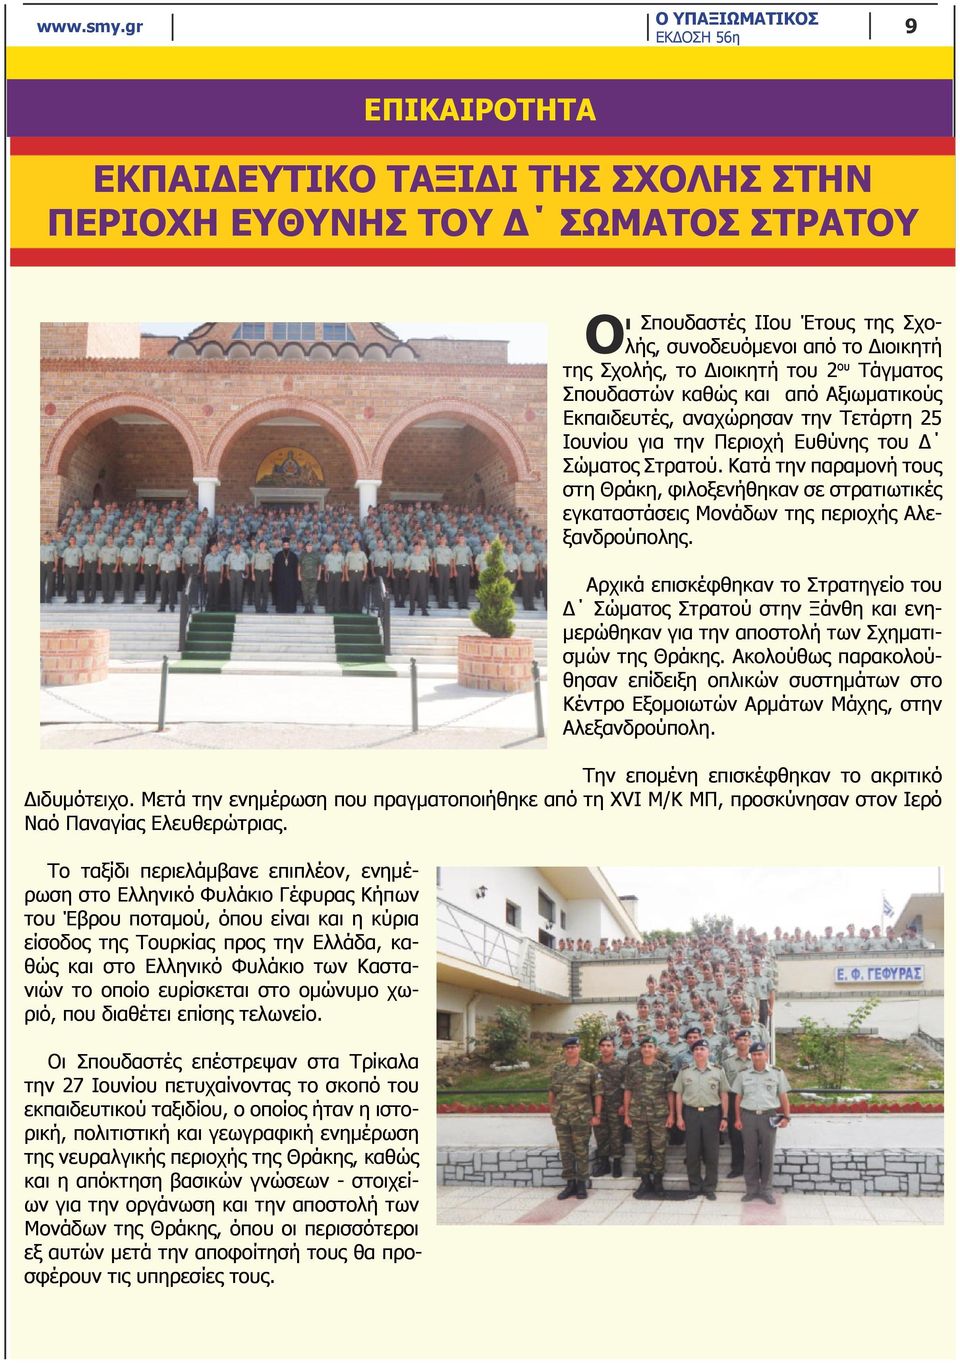 Κατά την παραμονή τους στη Θράκη, φιλοξενήθηκαν σε στρατιωτικές εγκαταστάσεις Μονάδων της περιοχής Αλεξανδρούπολης.